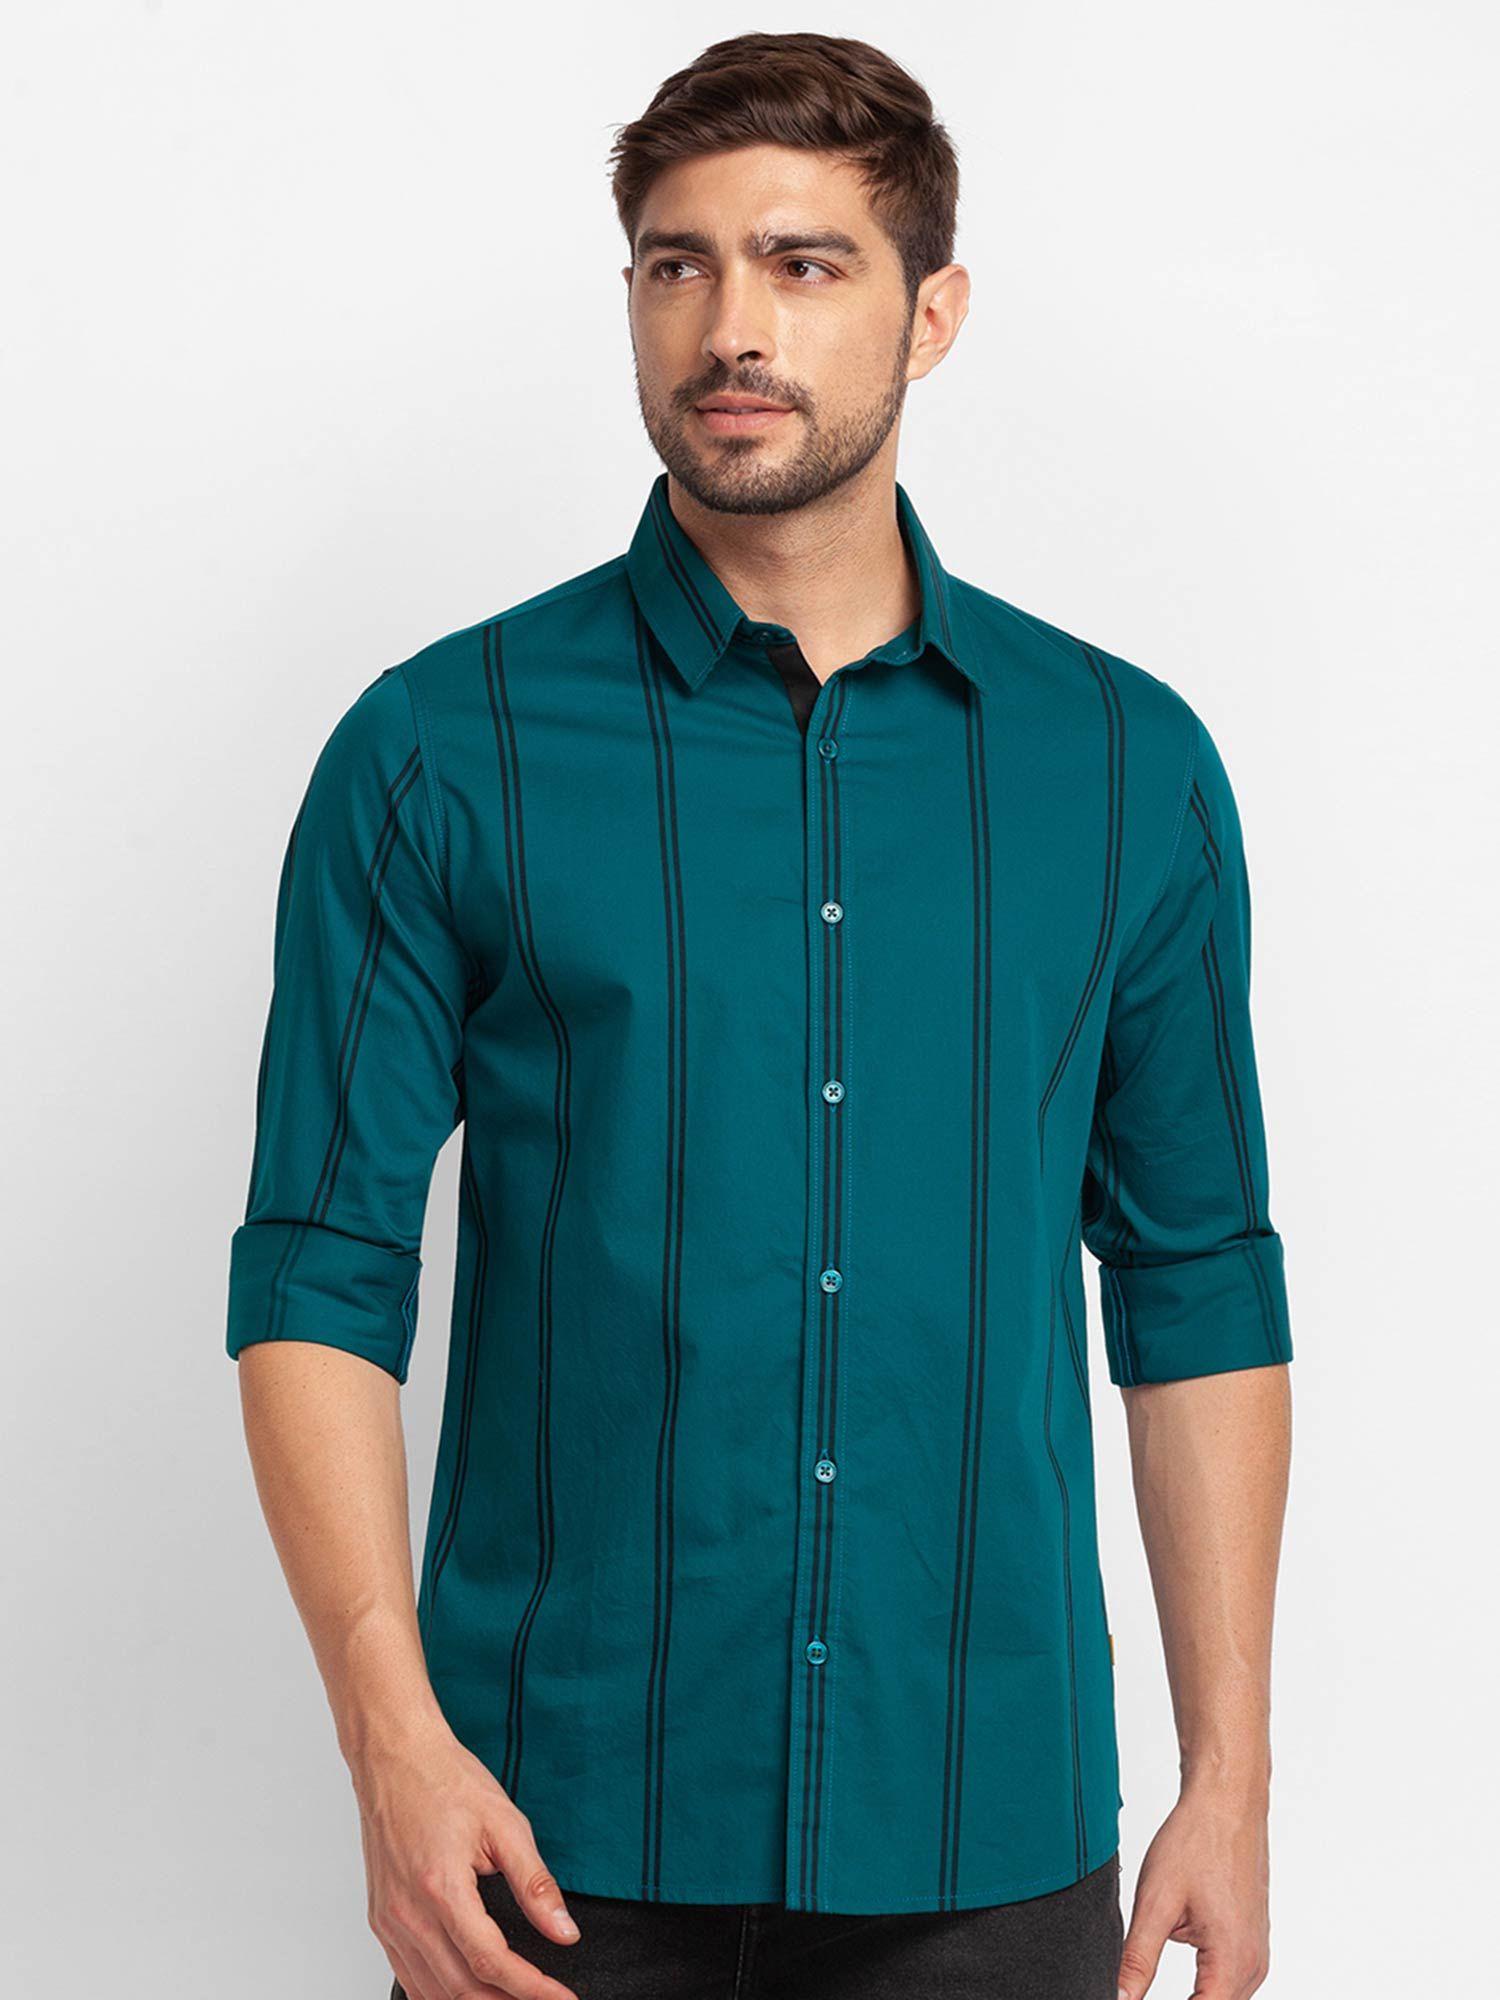 sporty-green-cotton-full-sleeve-stripes-shirt-for-men